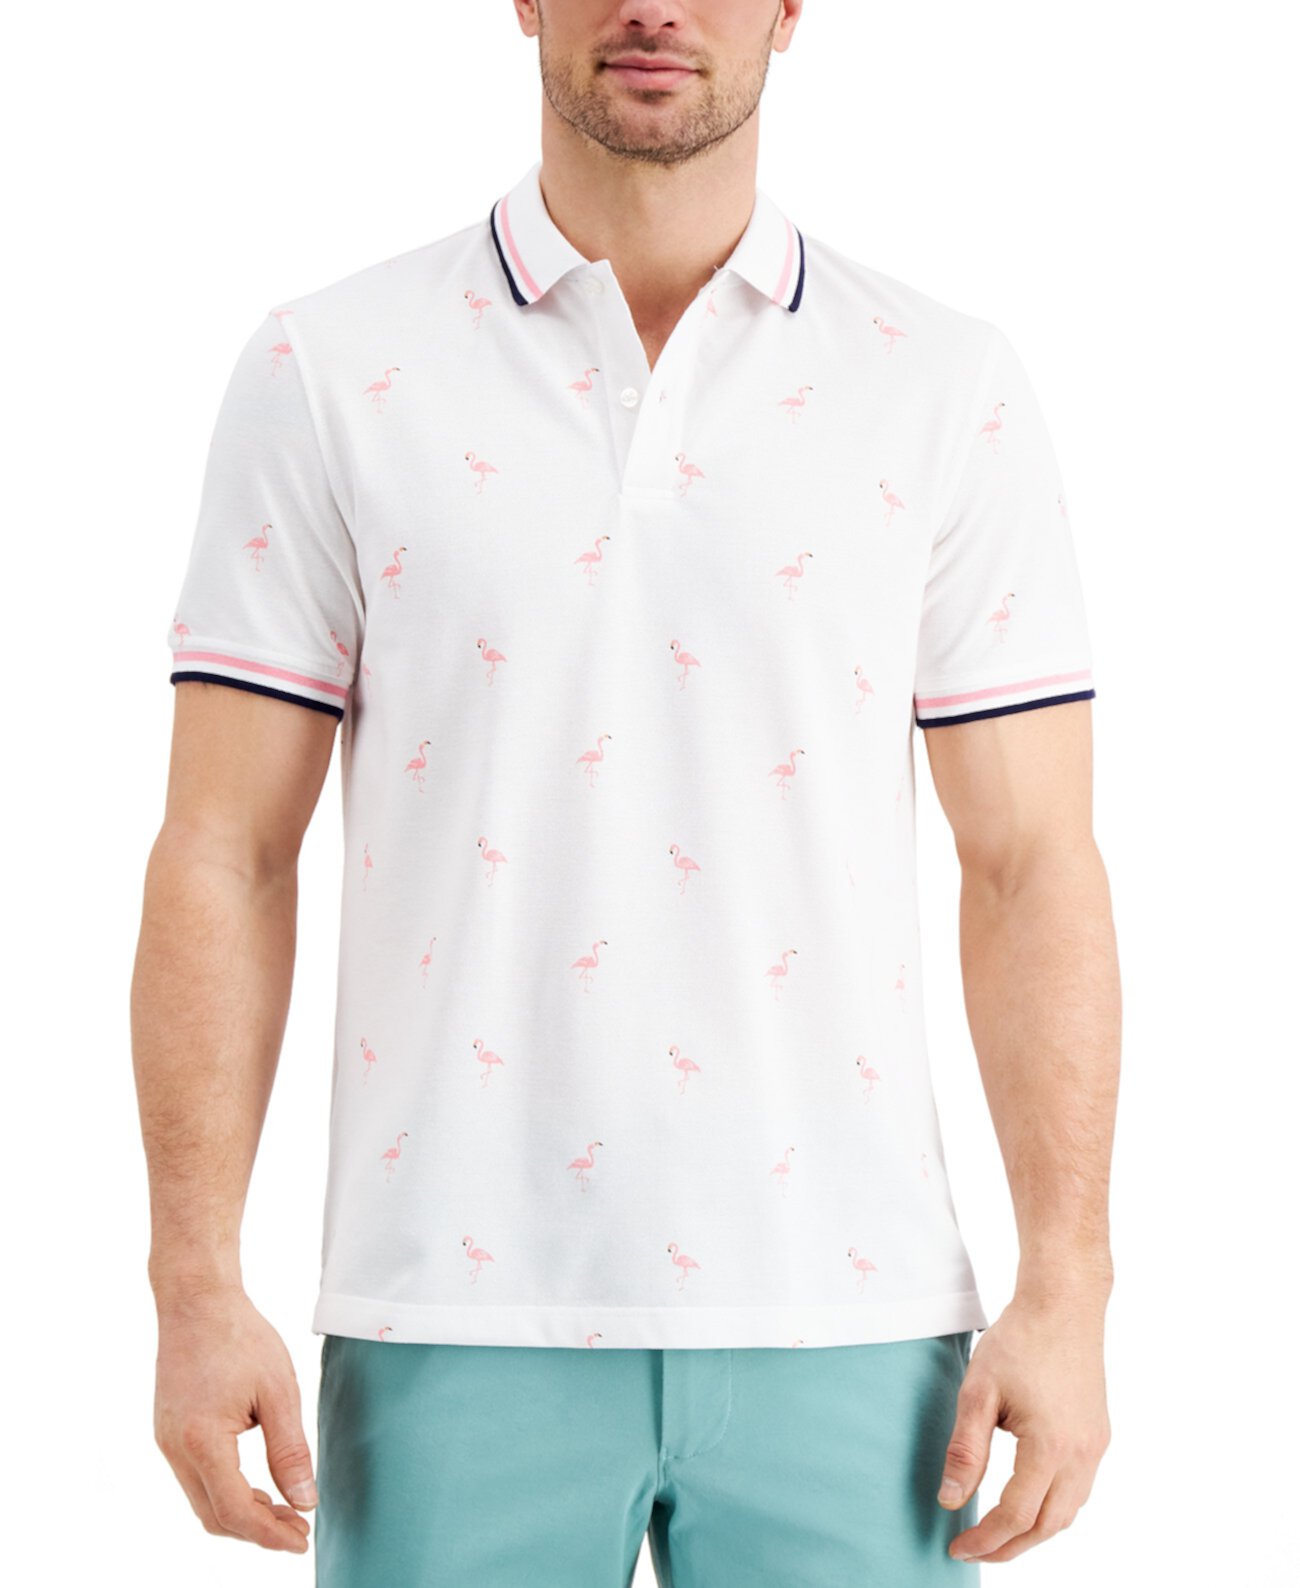 Мужская рубашка-поло стрейч с рисунком фламинго, созданная для Macy's Club Room